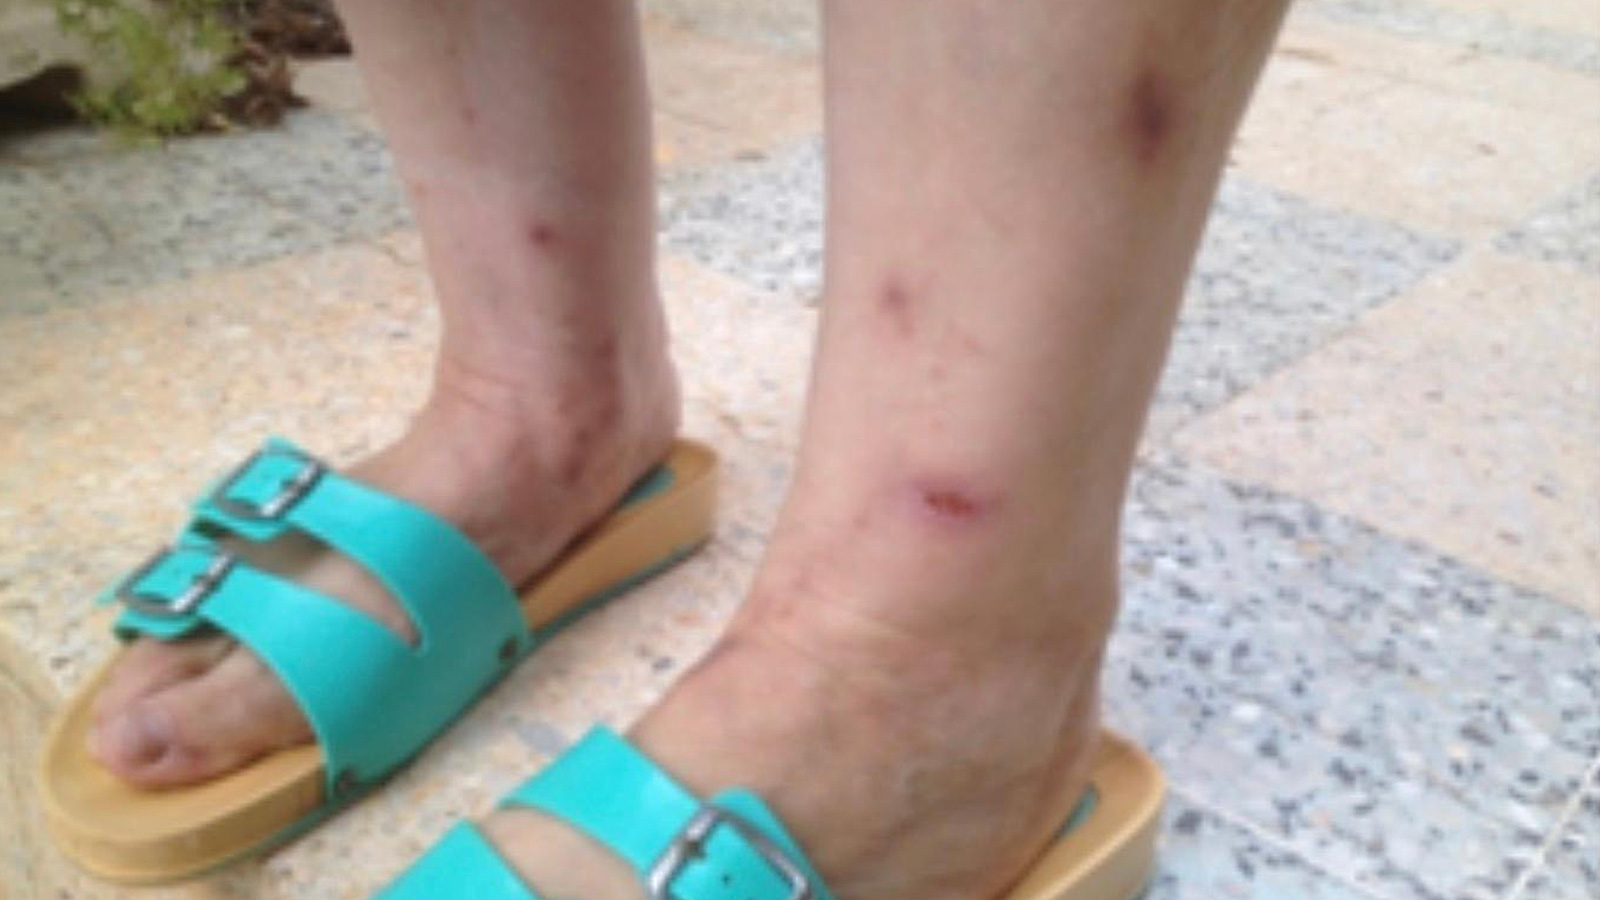 شخص مصاب بلسعات بعوض النمر في الجزائر (معهد باستور)